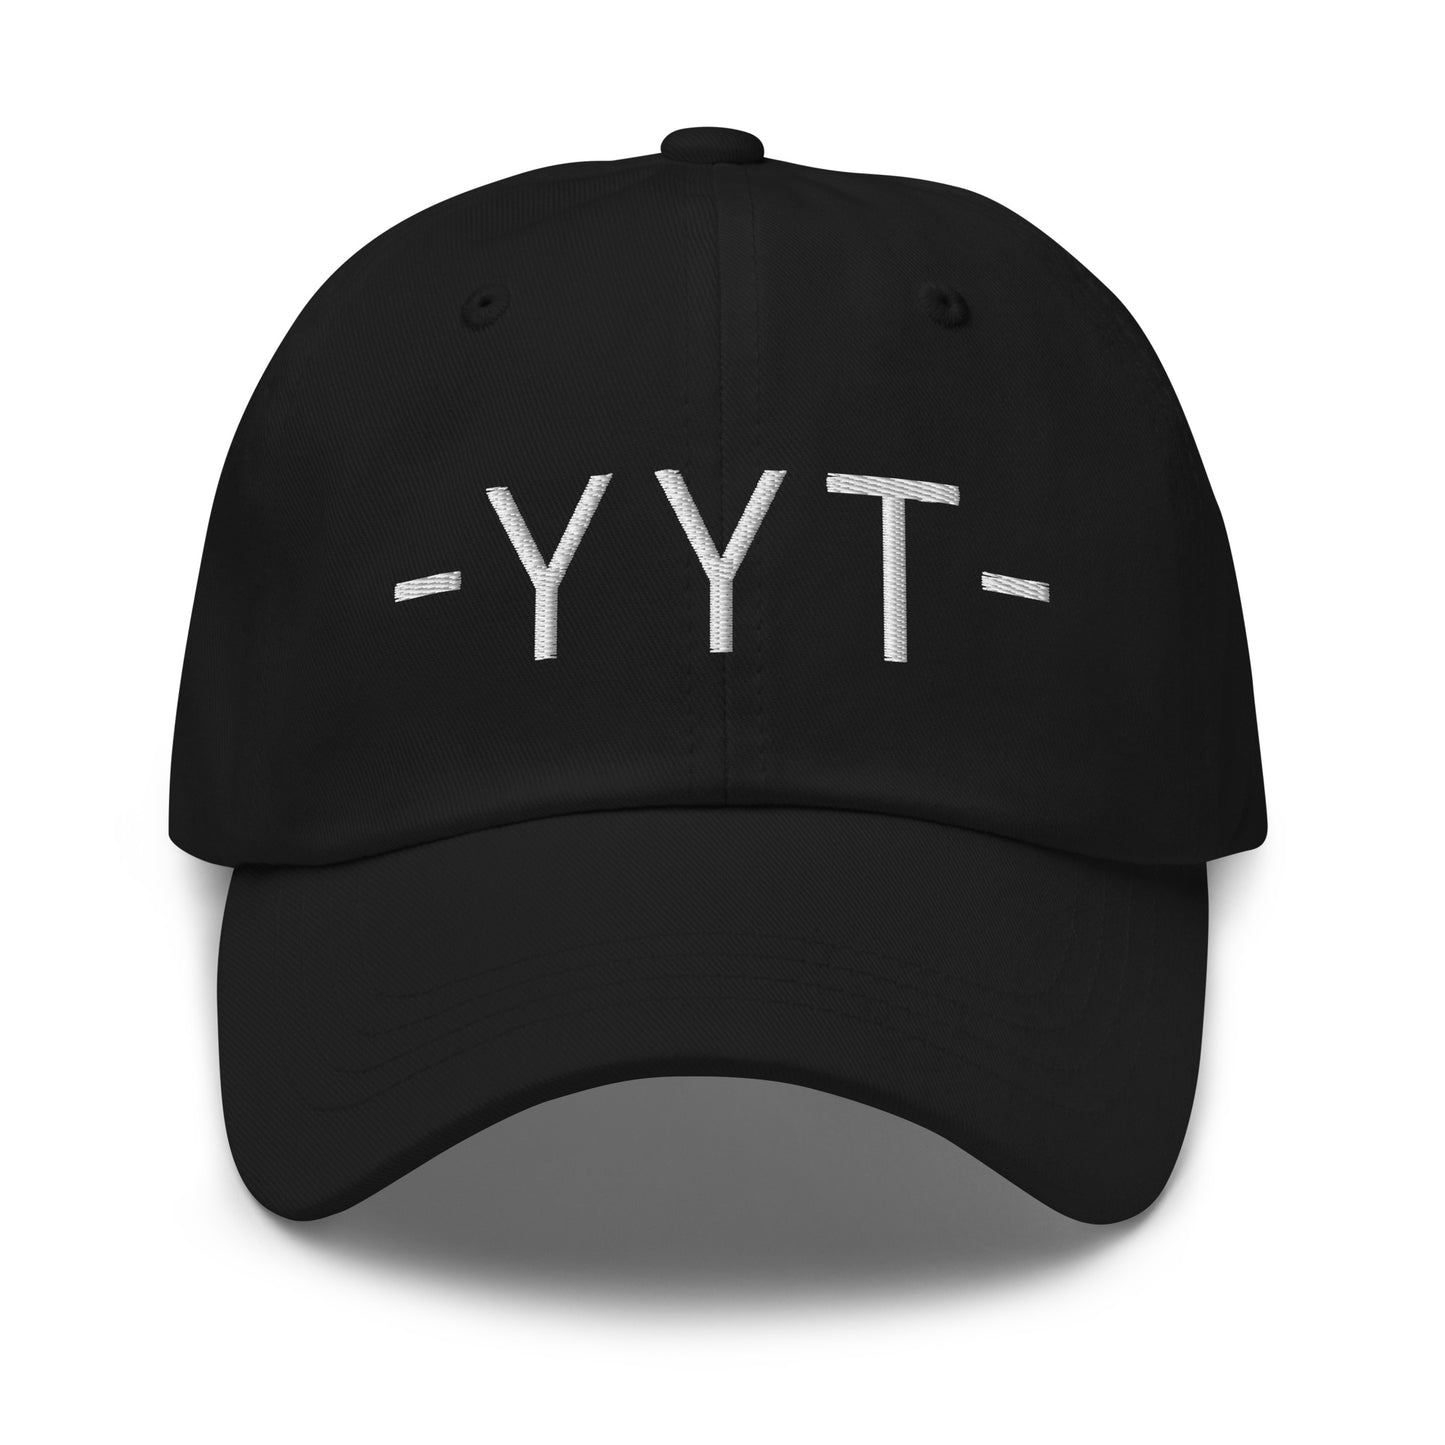 Souvenir Baseball Cap - White • YYT St. John's • YHM Designs - Image 12